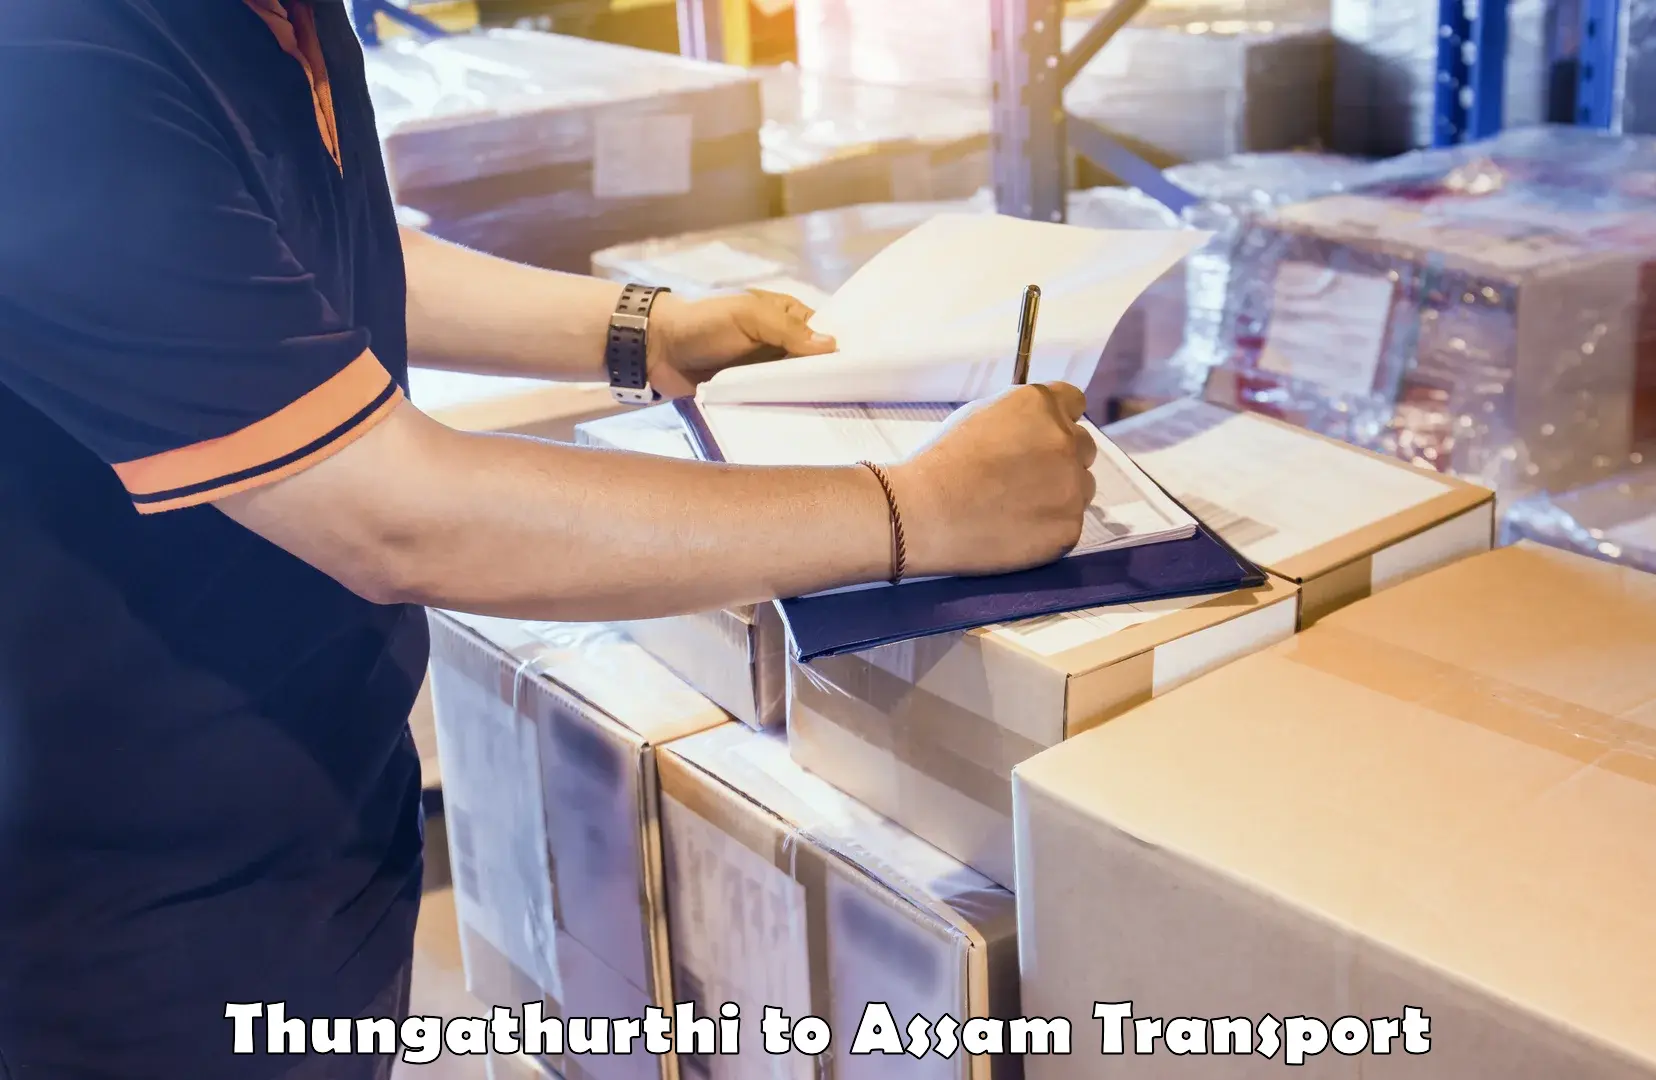 Online transport Thungathurthi to Assam